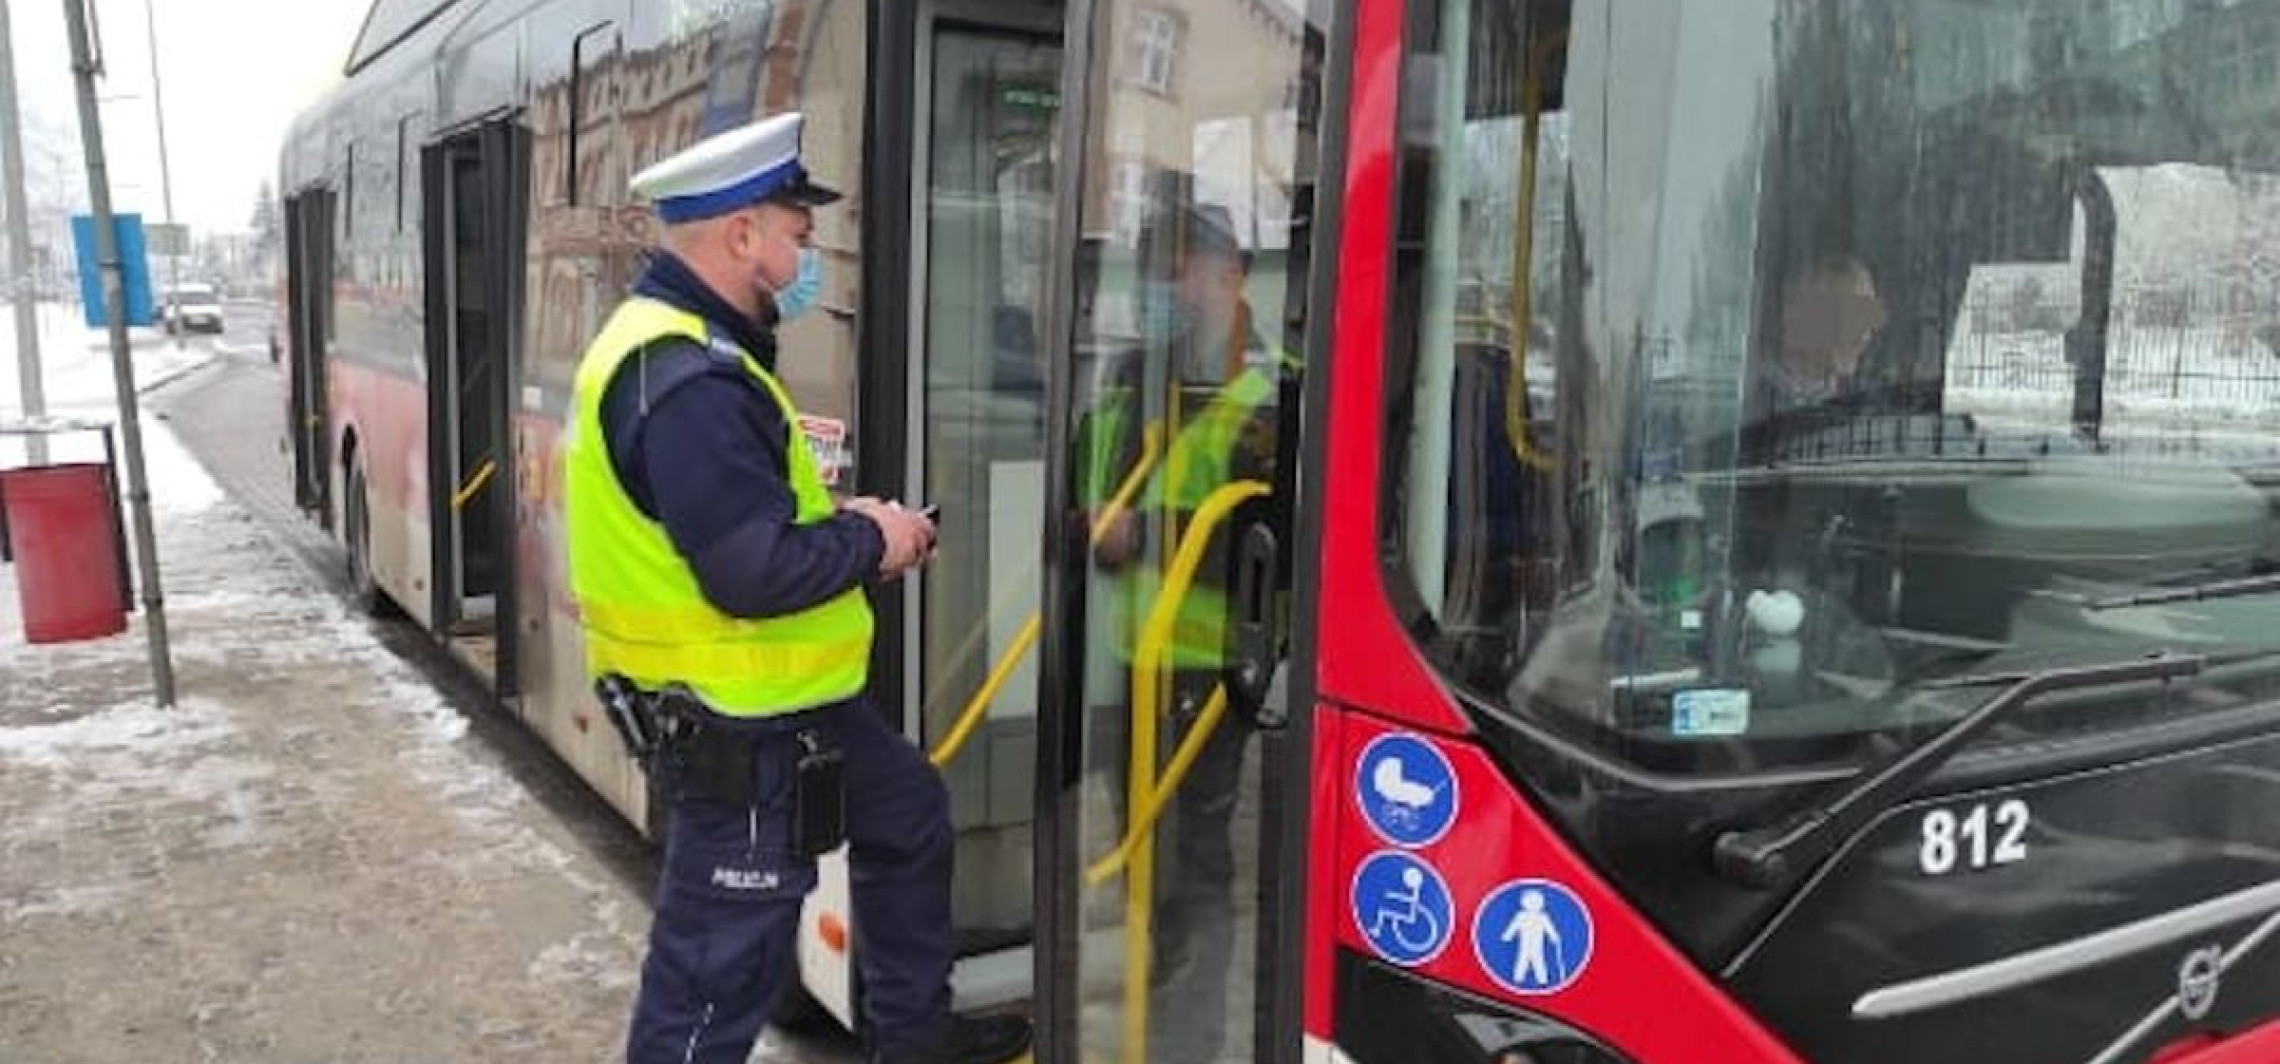 Inowrocław - W autobusach posypały się mandaty. Od policjantów